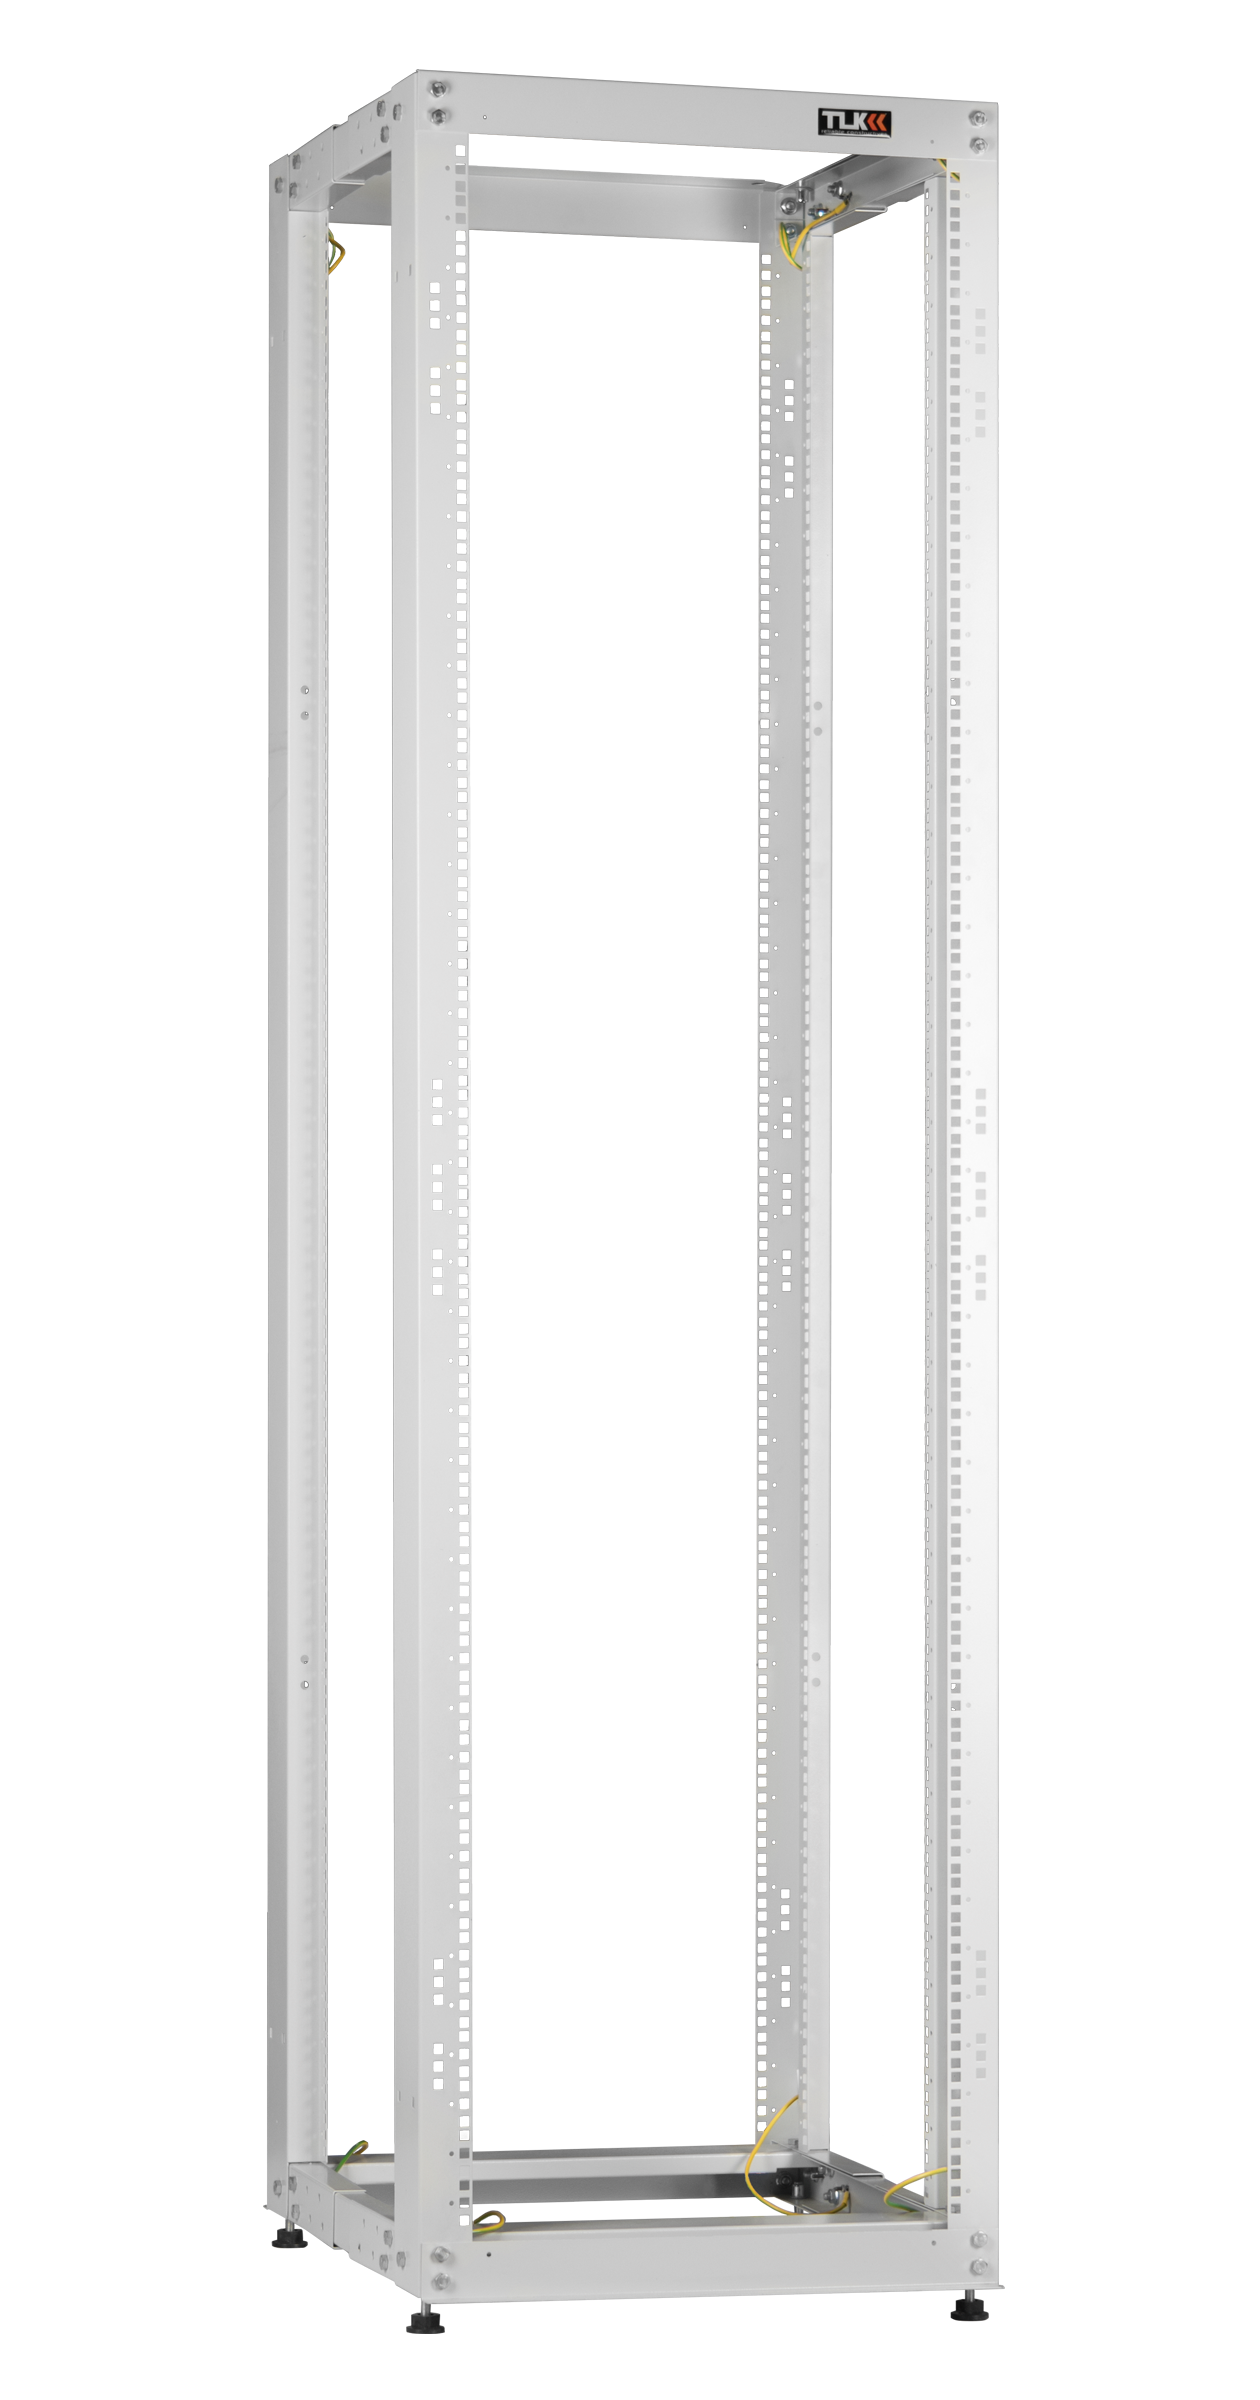 Монтажная стойка TLK двухрамная раздвижная 19", 24U, Ш550xВ1195xГ(600-1000) мм, шаг регулировки глубины 50мм, в разобранном виде, серый (TRK-245510-R-GY)